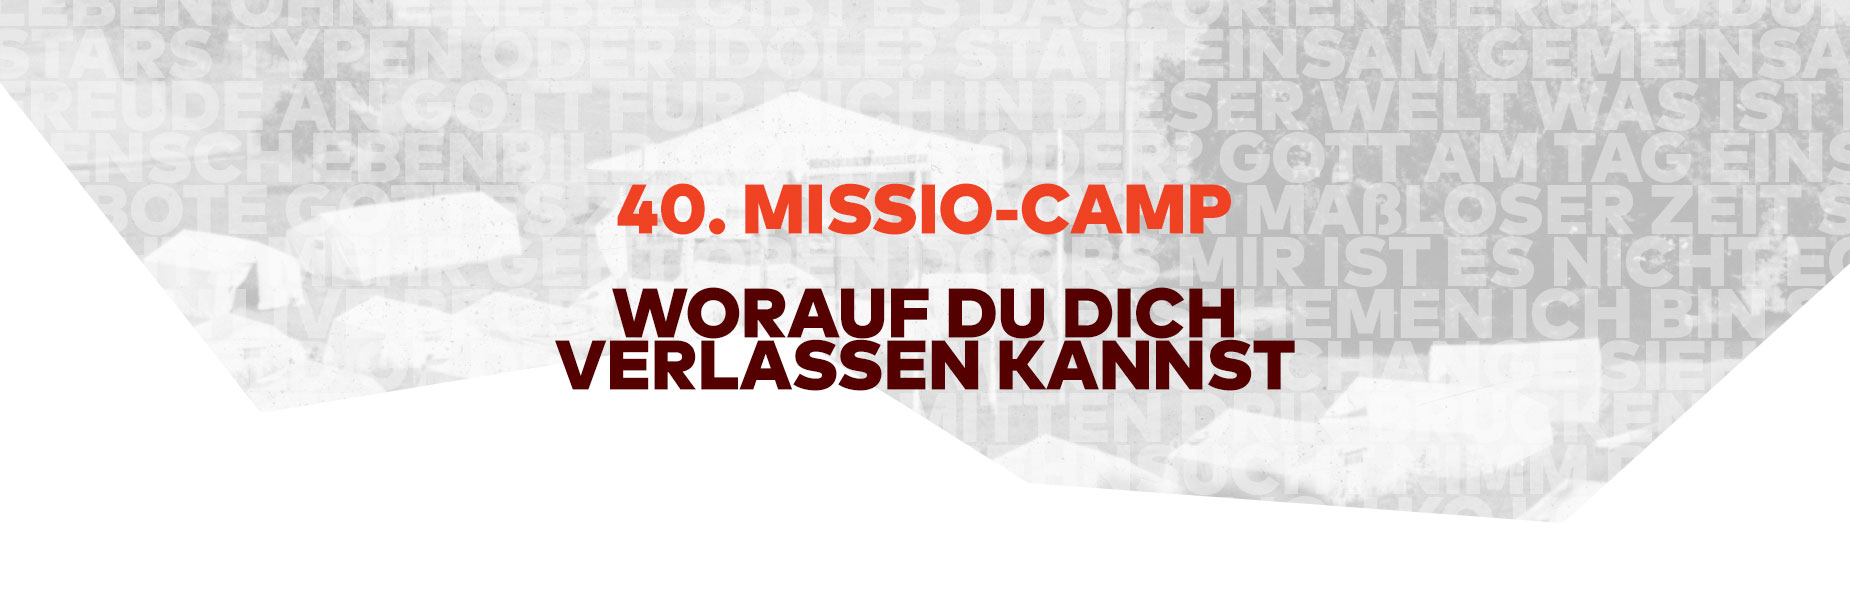 40. MISSIO-CAMP – Worauf du dich verlassen kannst!